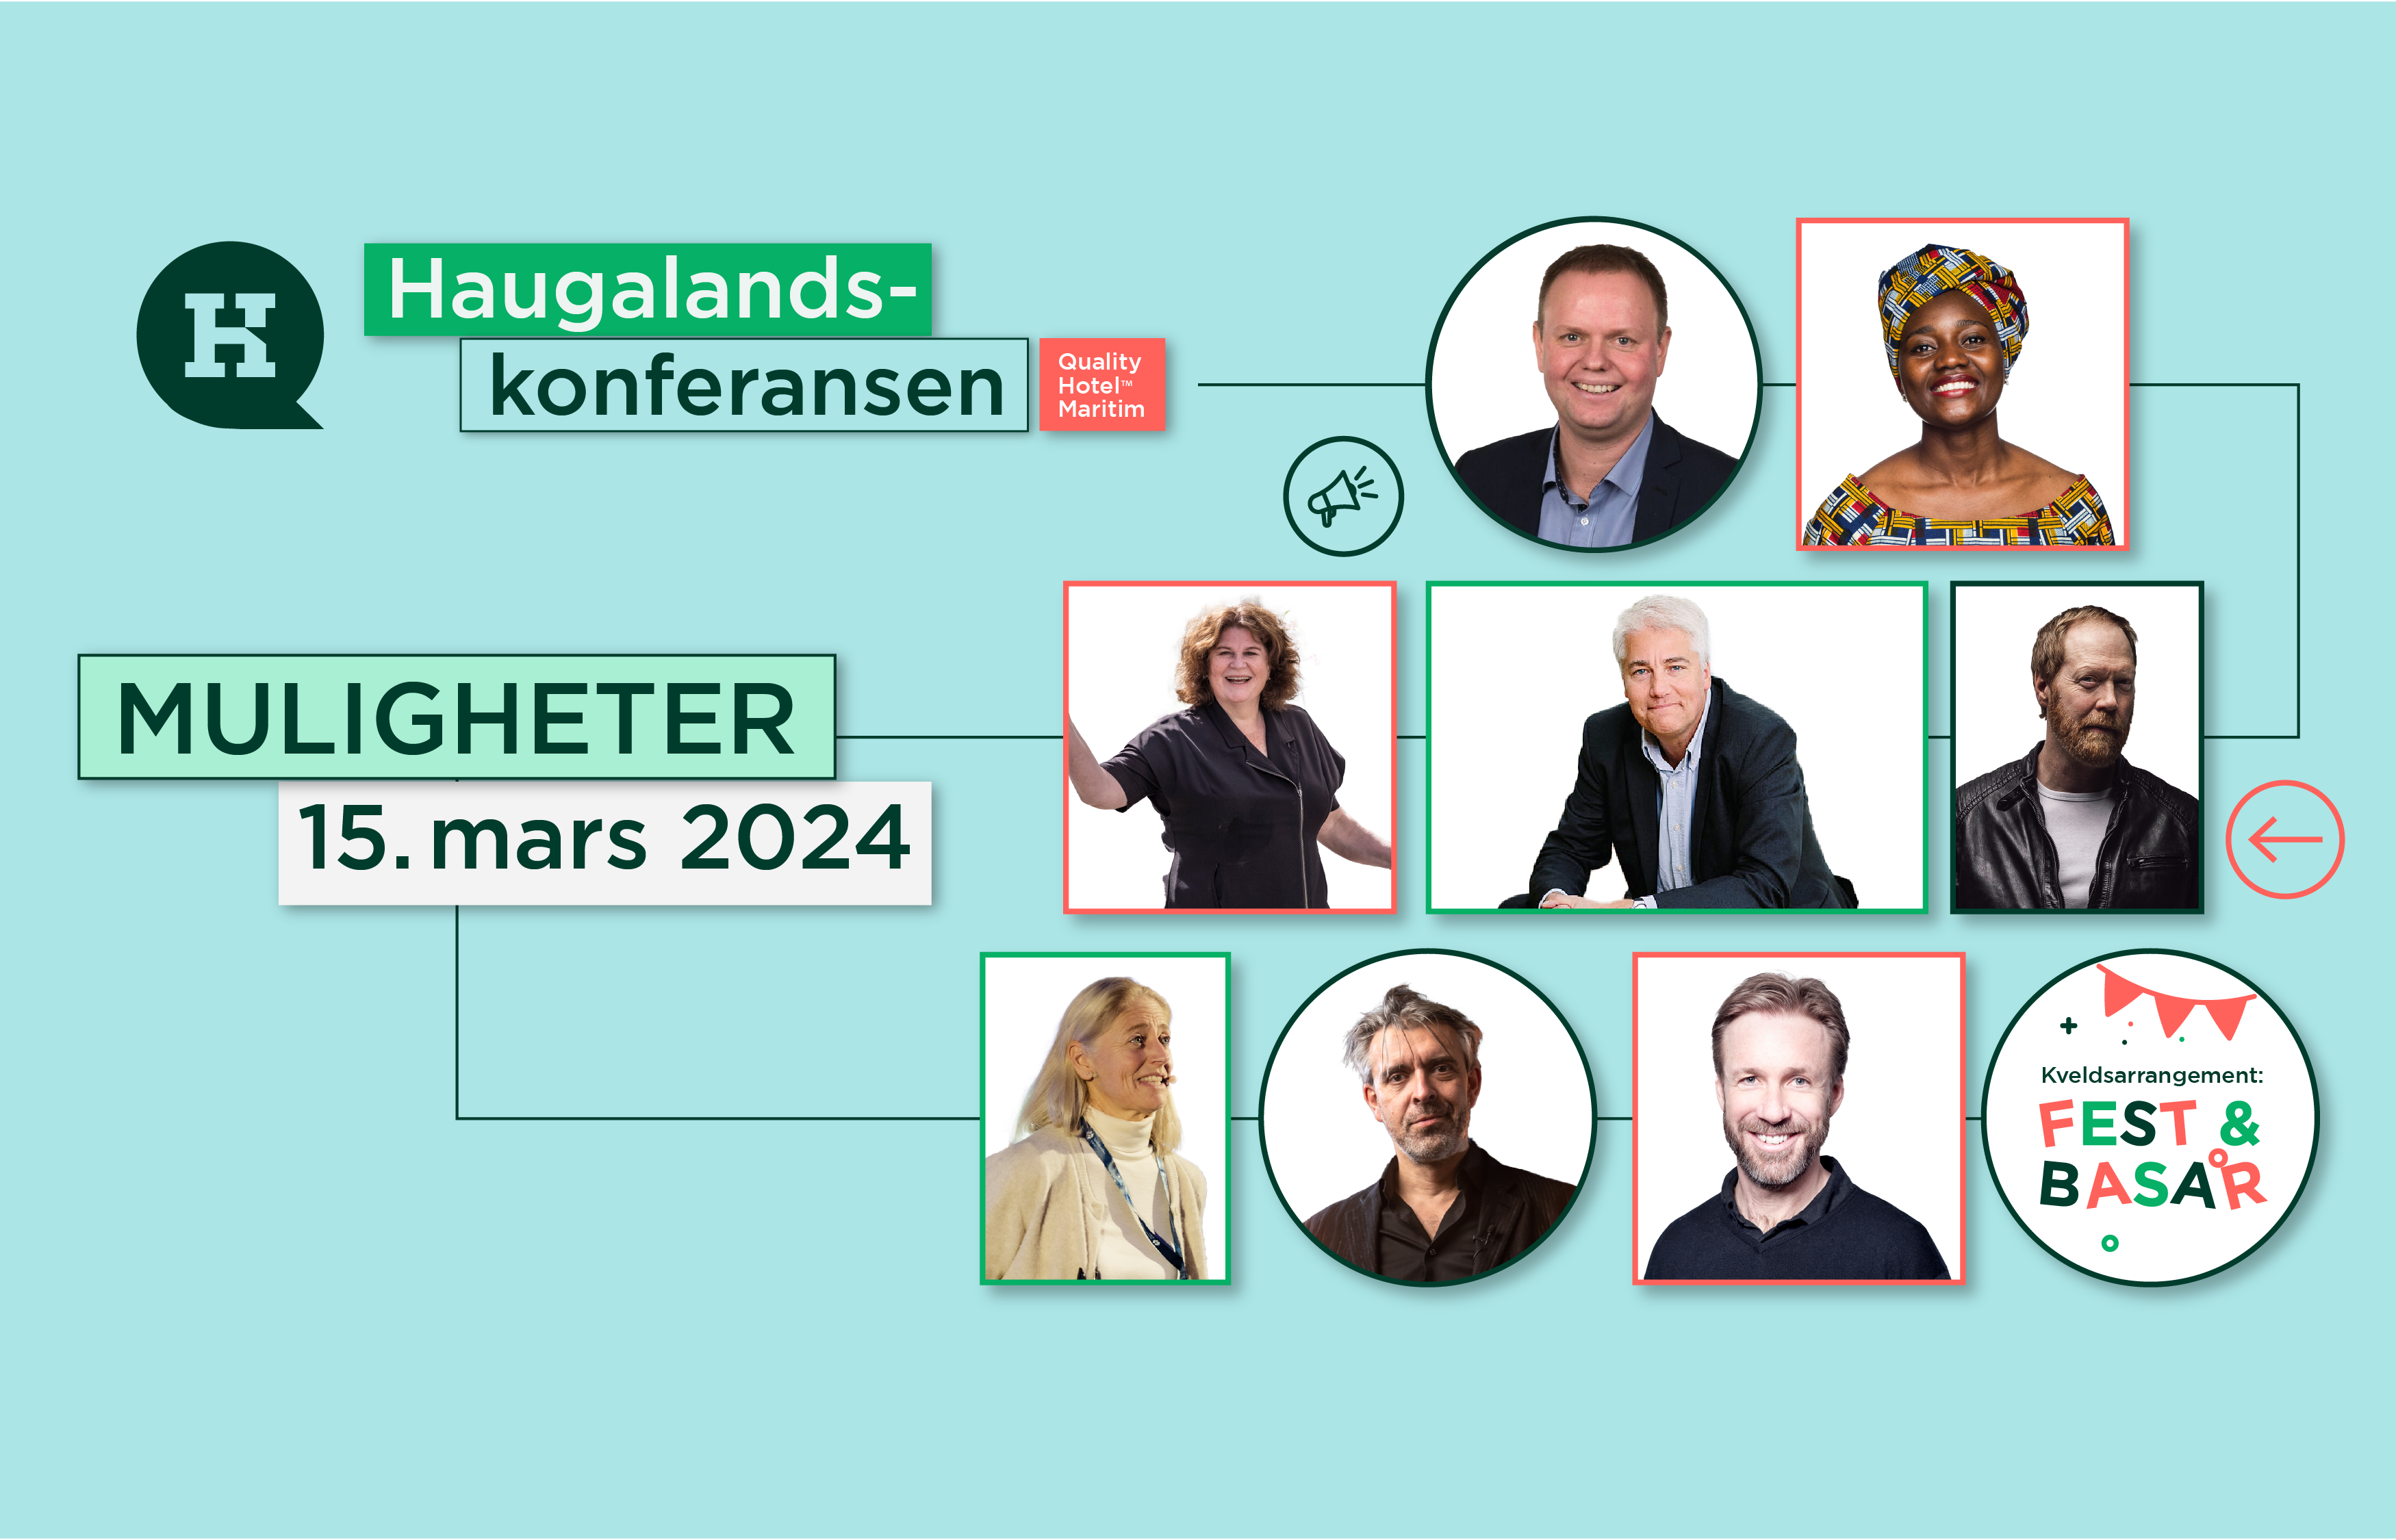 Haugalandskonferansen 2024